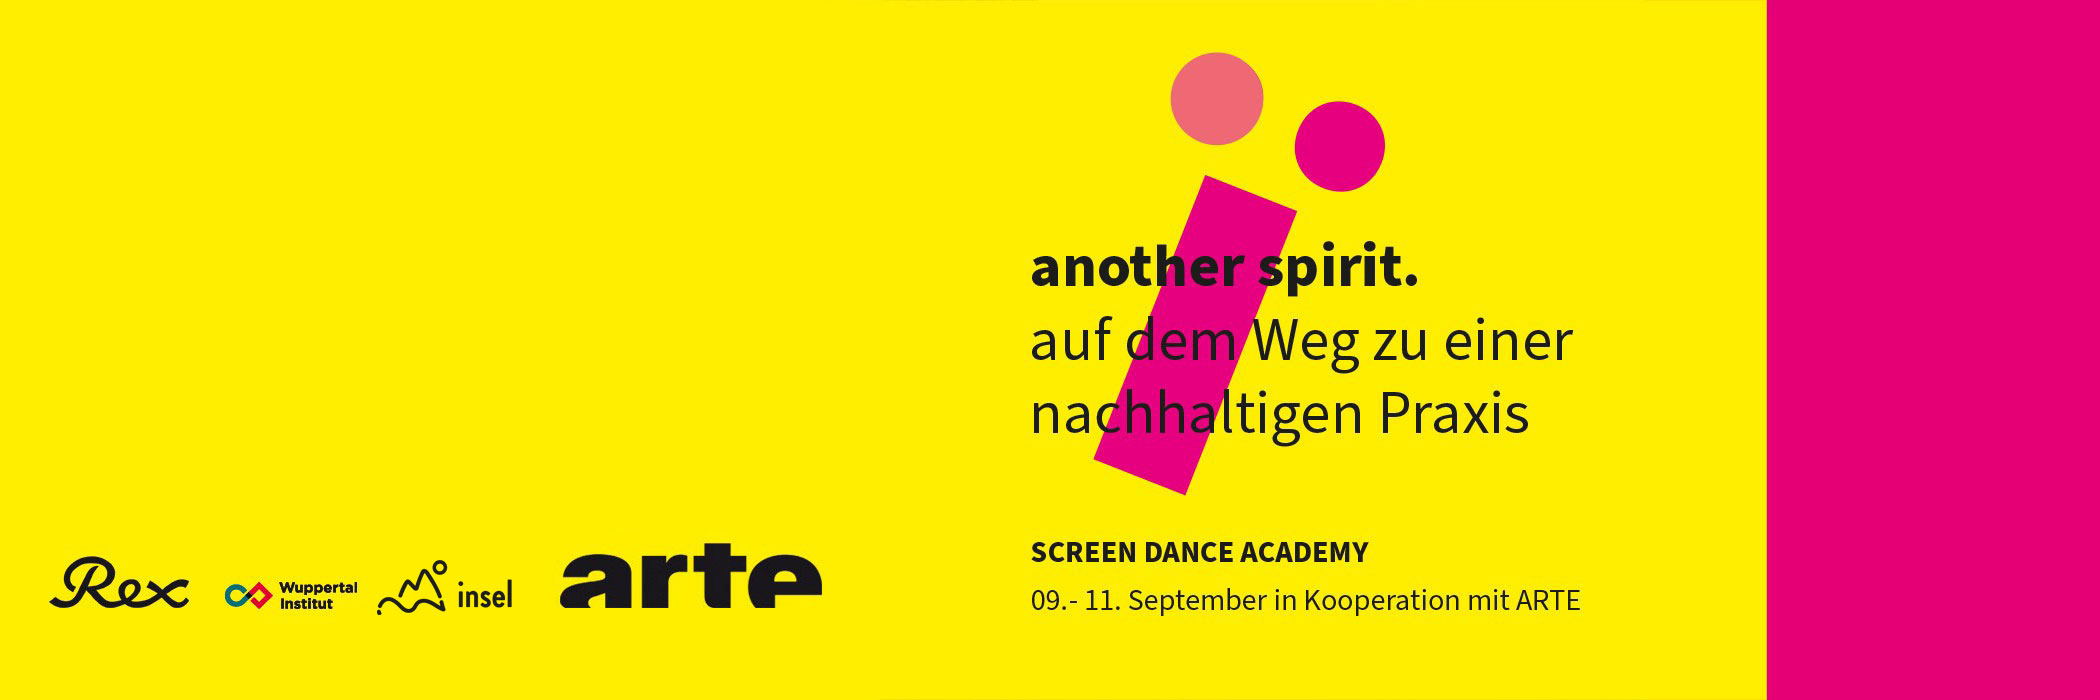 Screen Dance Academy